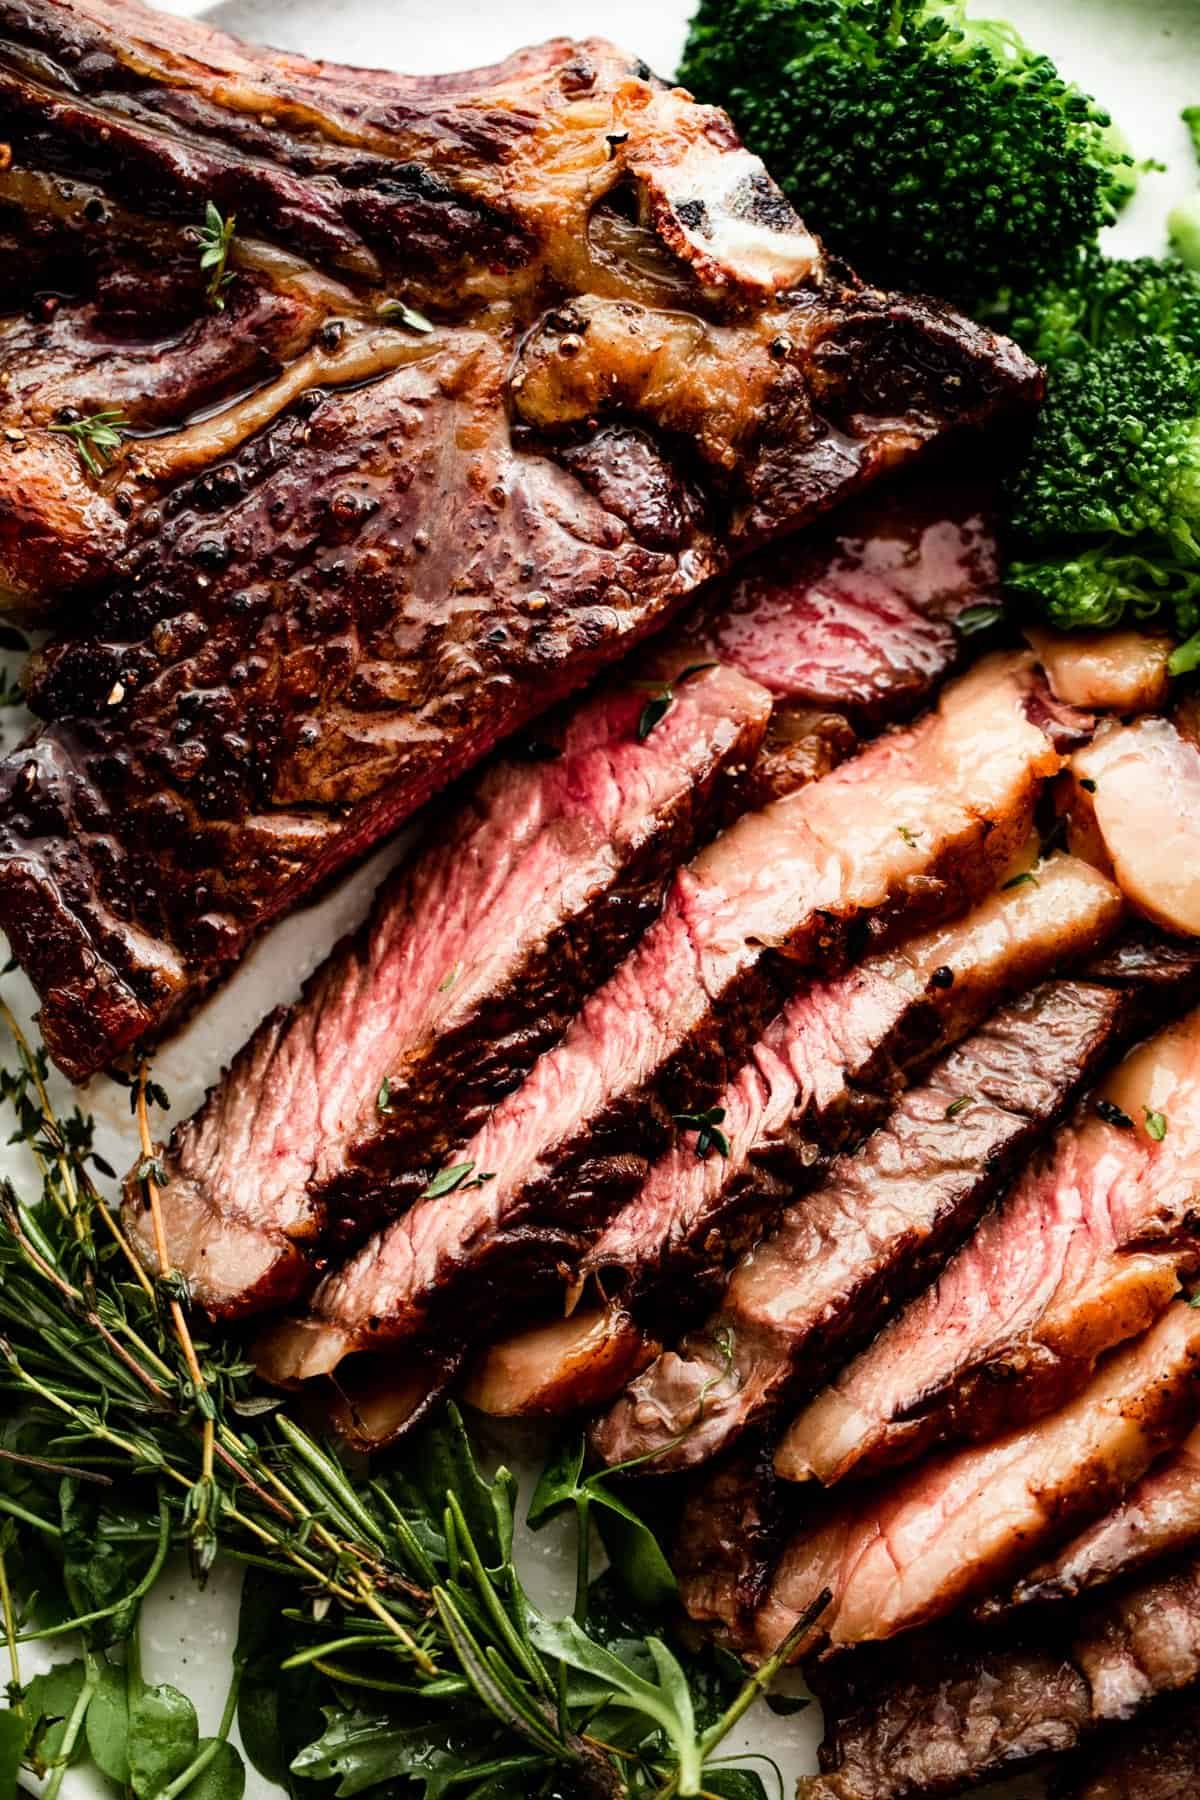 Nahaufnahme eines in Scheiben geschnittenen umgekehrt gebratenen Ribeye-Steaks auf einem weißen Teller mit Brokkoli und Gemüse, die um das Steak herum angeordnet sind.